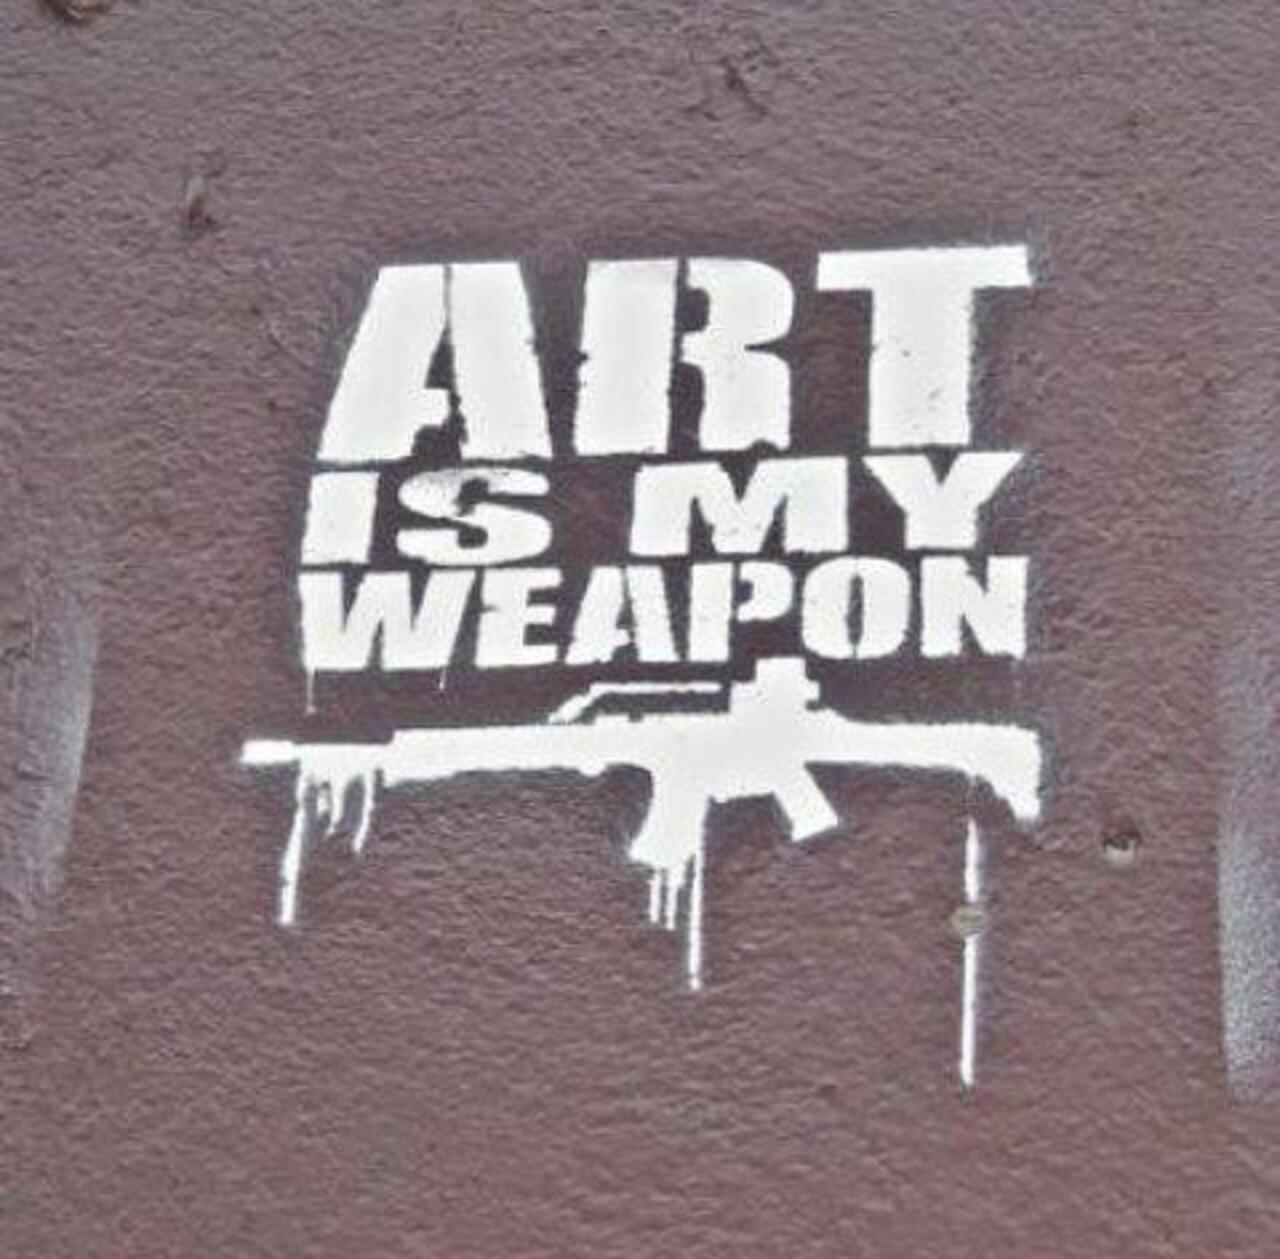 #Art #stencil #streetart #graffiti http://t.co/8YrSg1HtDf